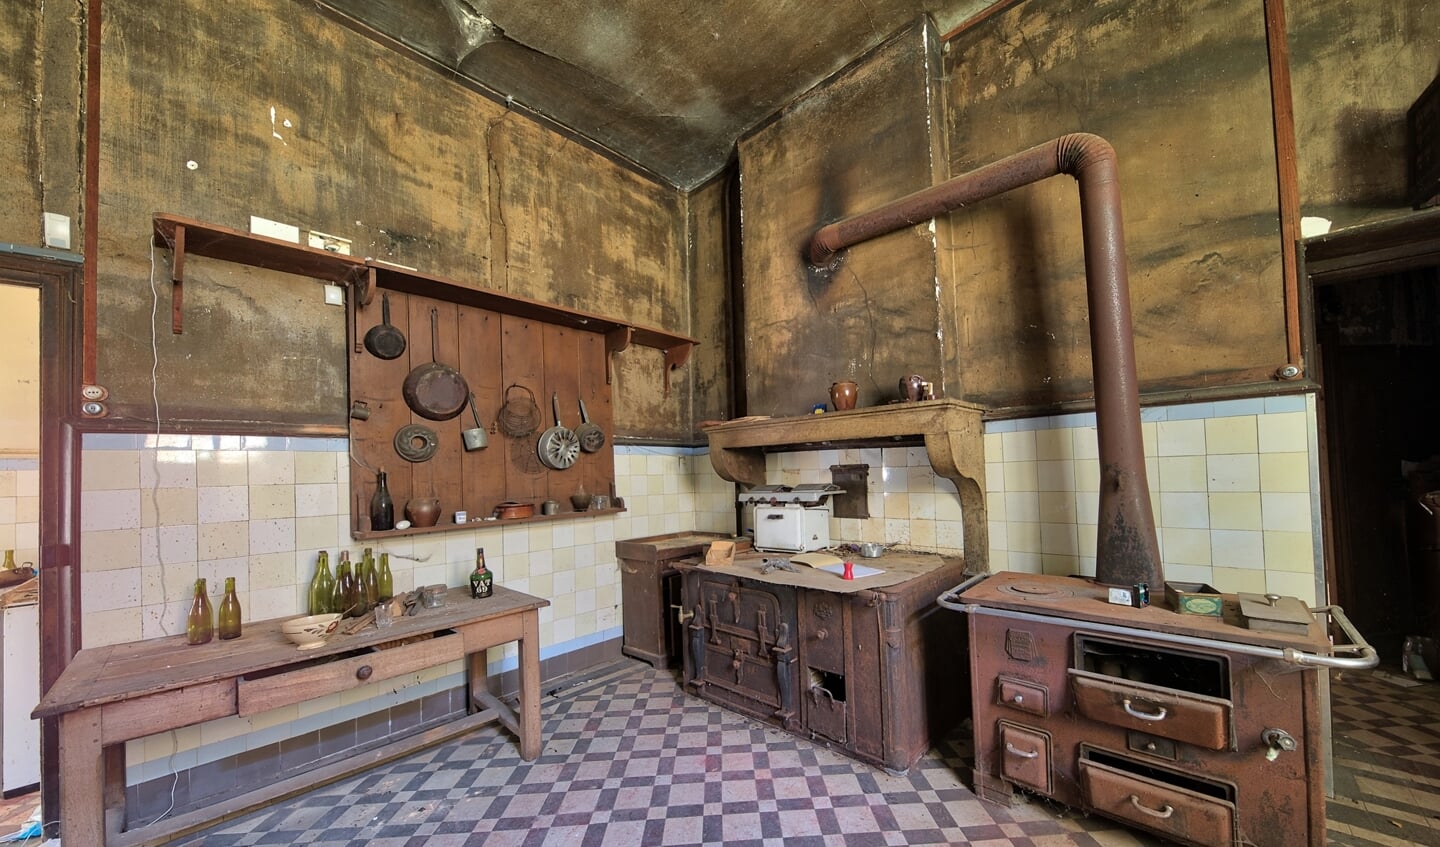 Een oude verlaten keuken, waar de pannen nog aan de muur hangen